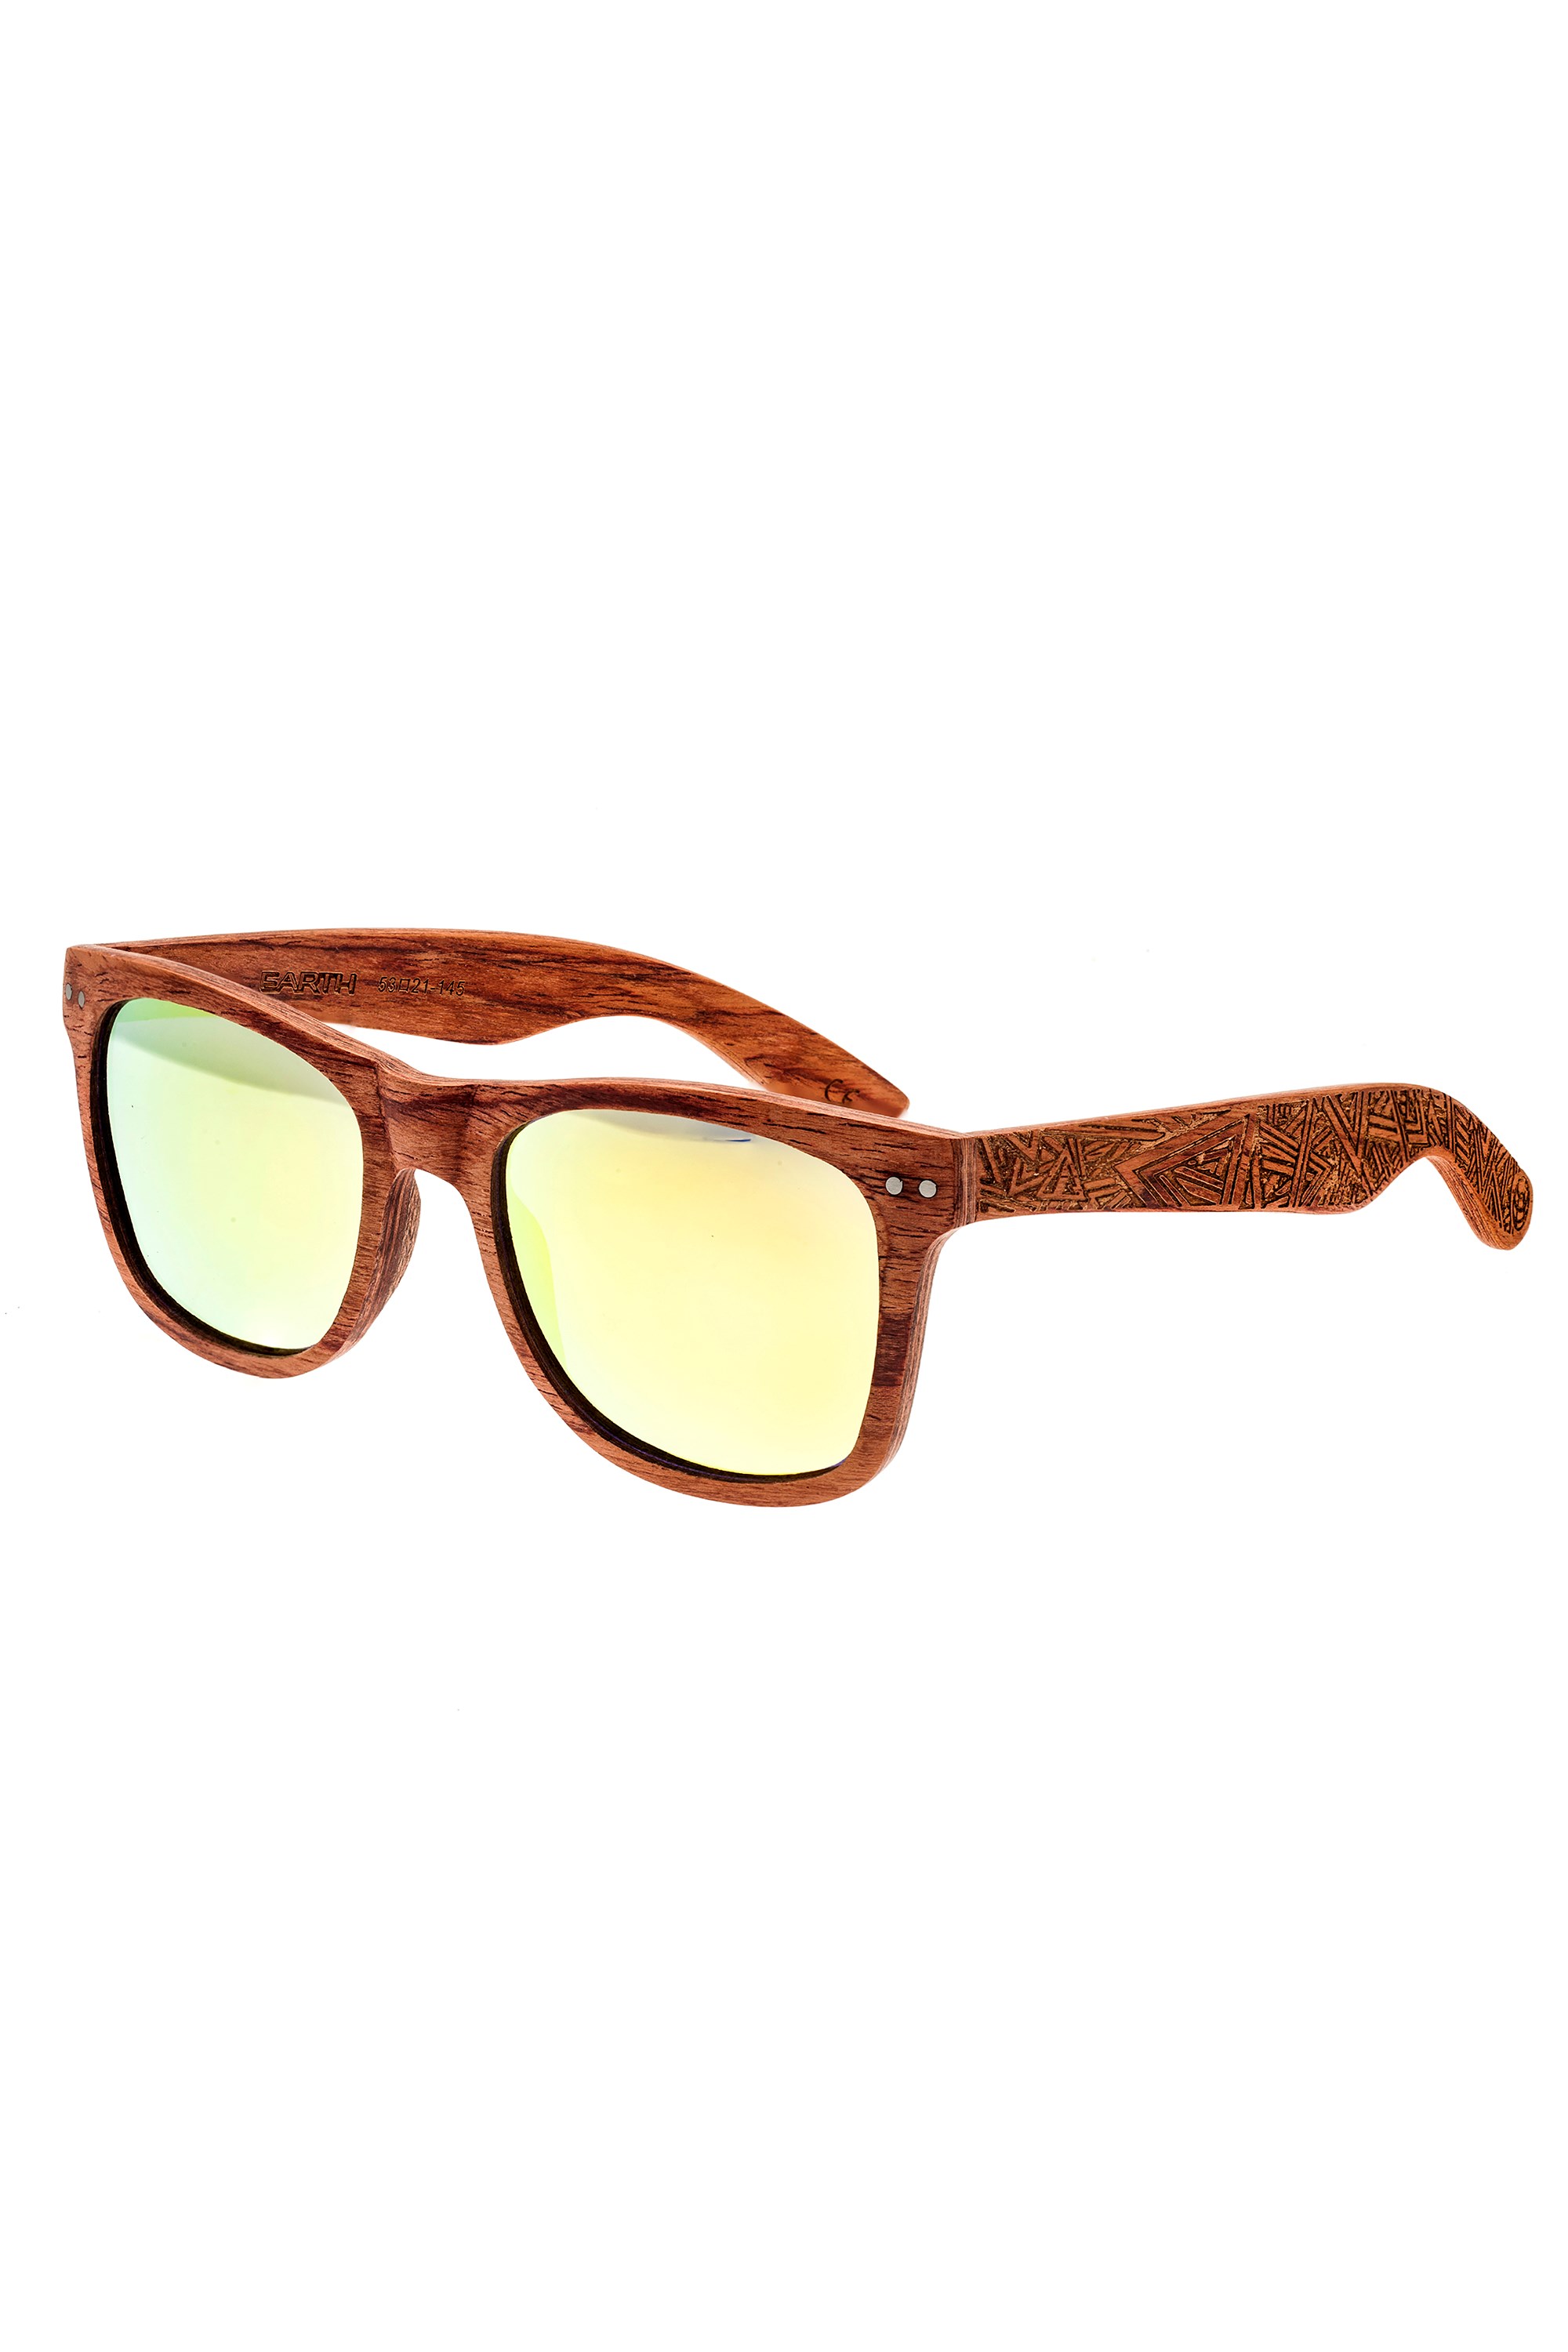 Cape Cod Polarized Sunglasses -